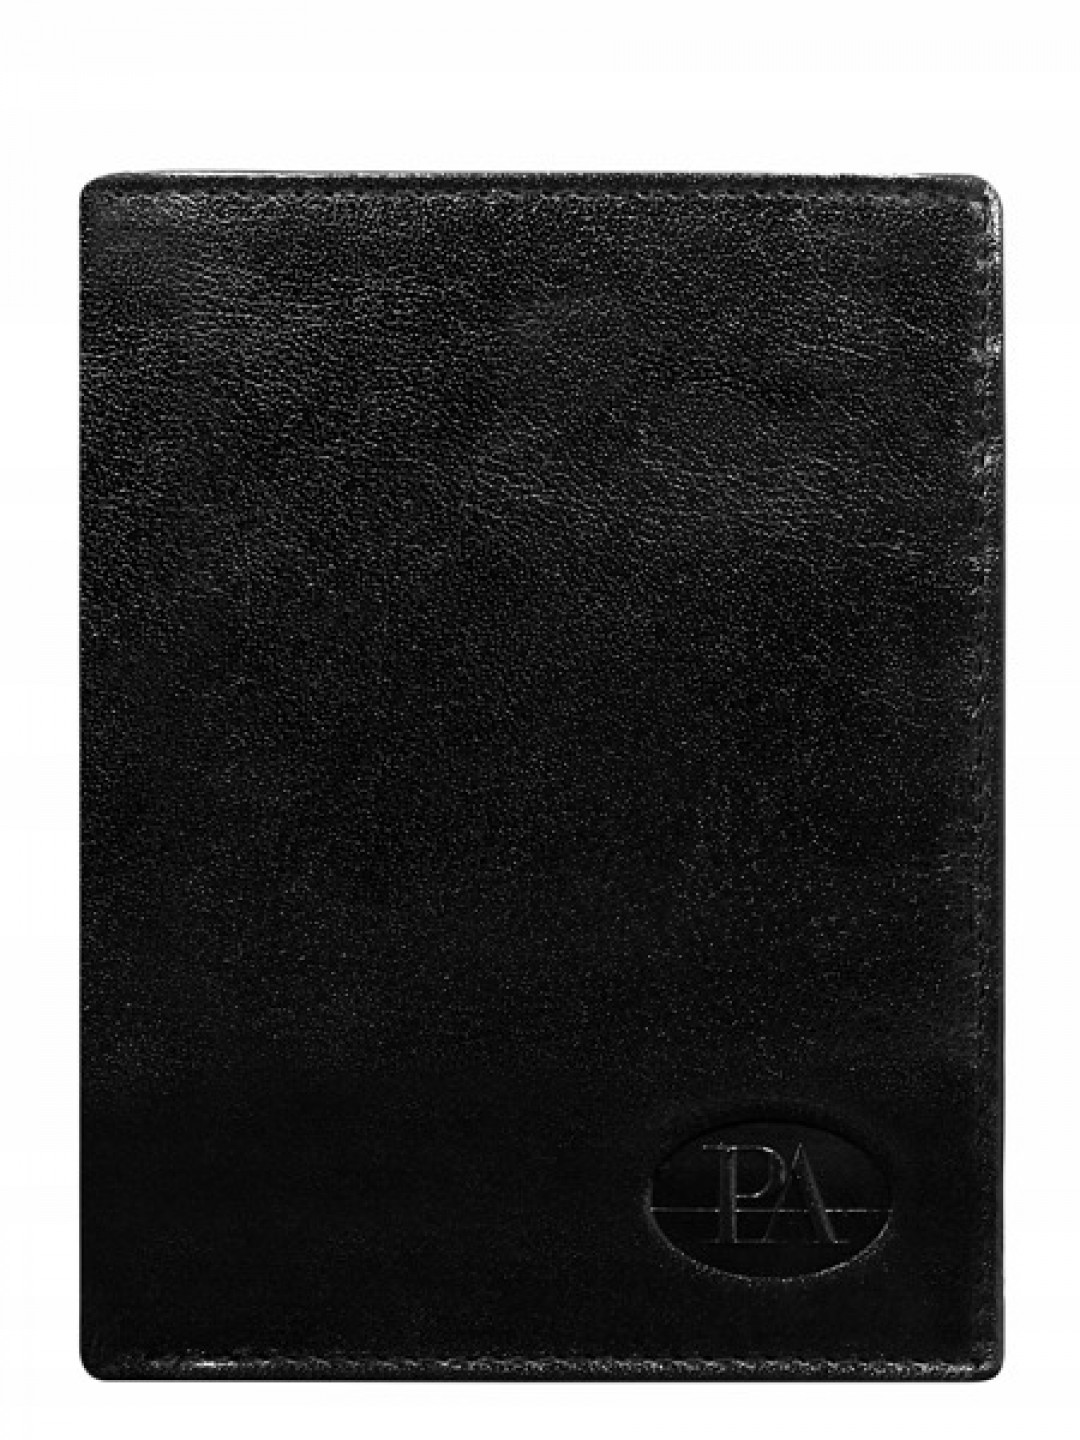 Pánská kožená peněženka bez přezky Toni černá